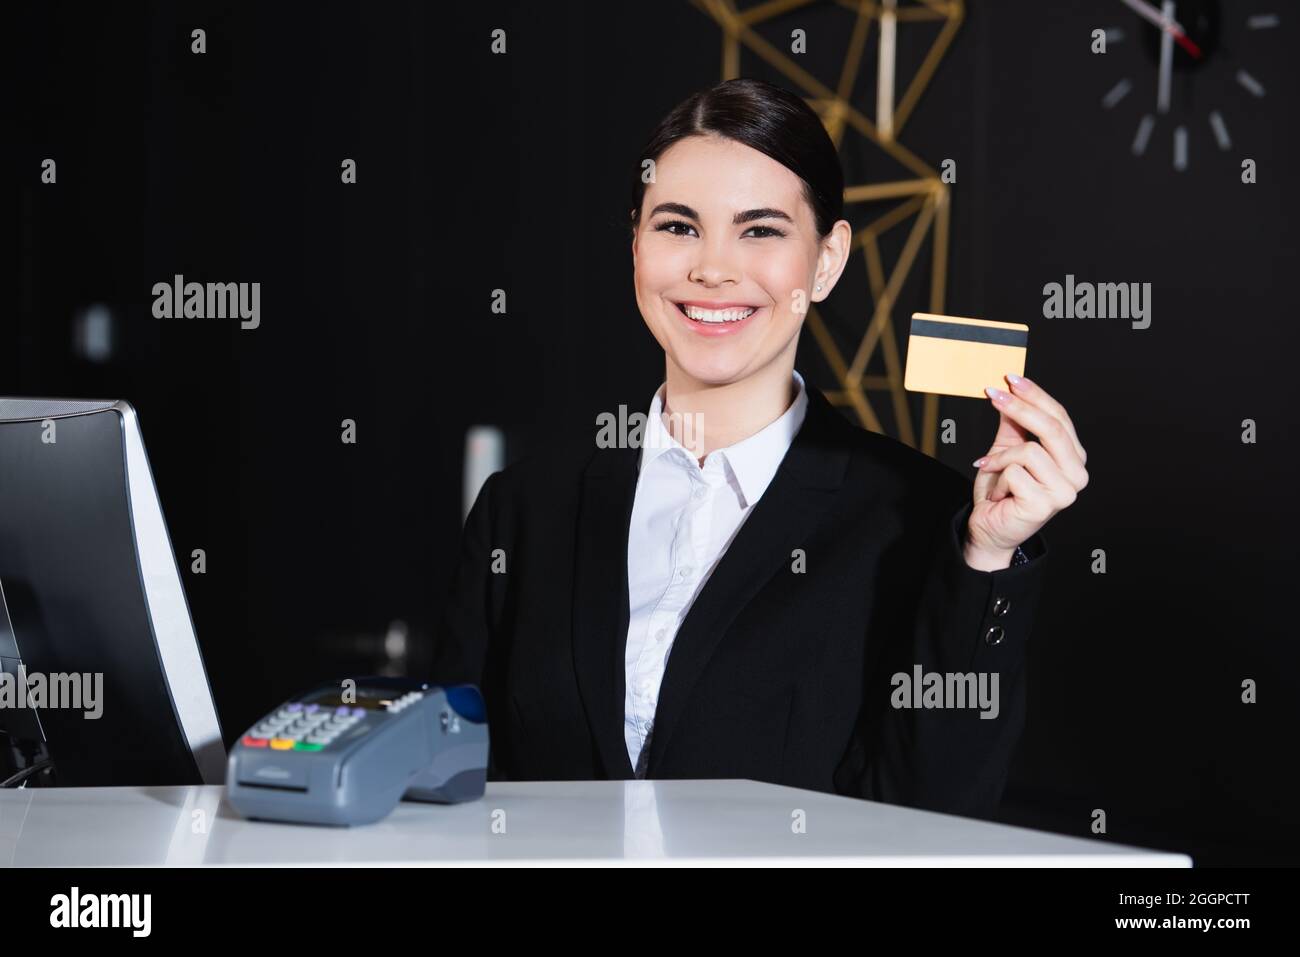 Glücklicher Verwalter, der die Kreditkarte in der Nähe des Zahlungsterminals im Hotel hält Stockfoto